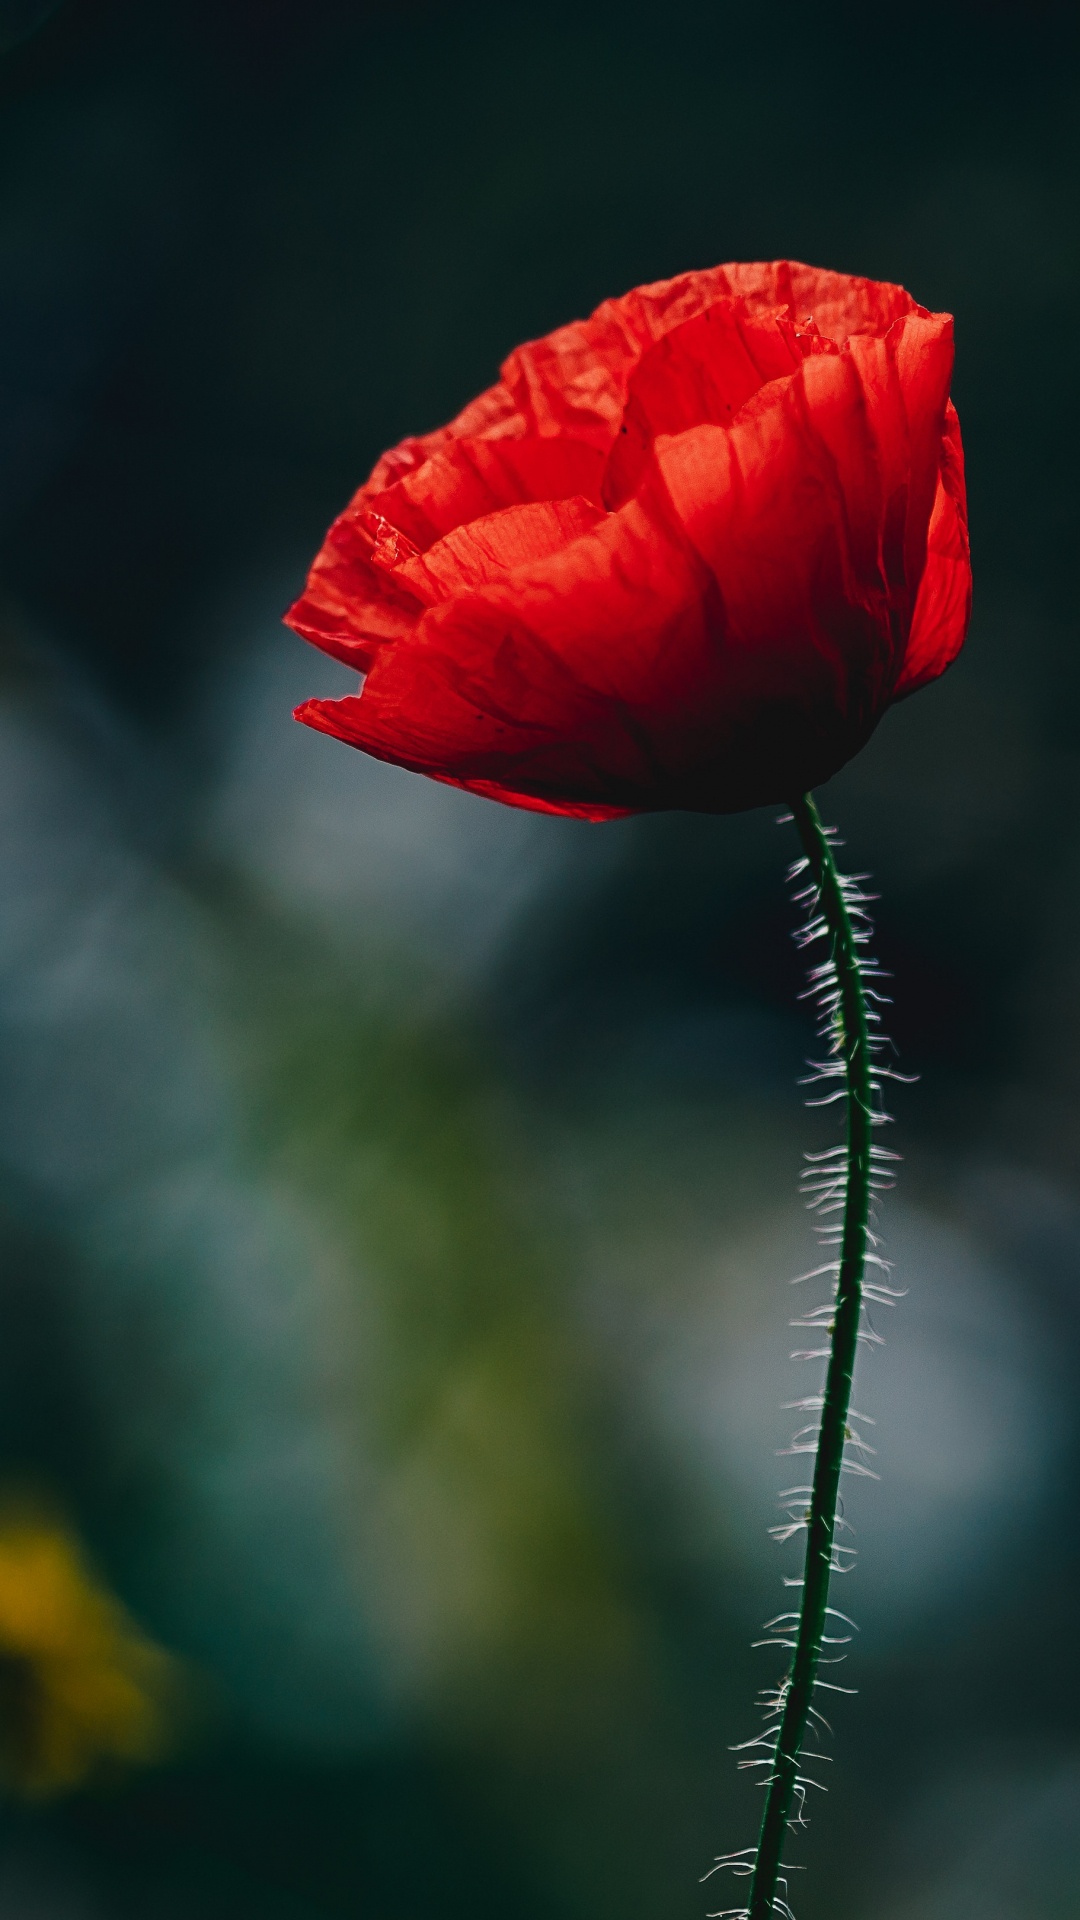 Red Flower in Tilt Shift Lens. Wallpaper in 1080x1920 Resolution